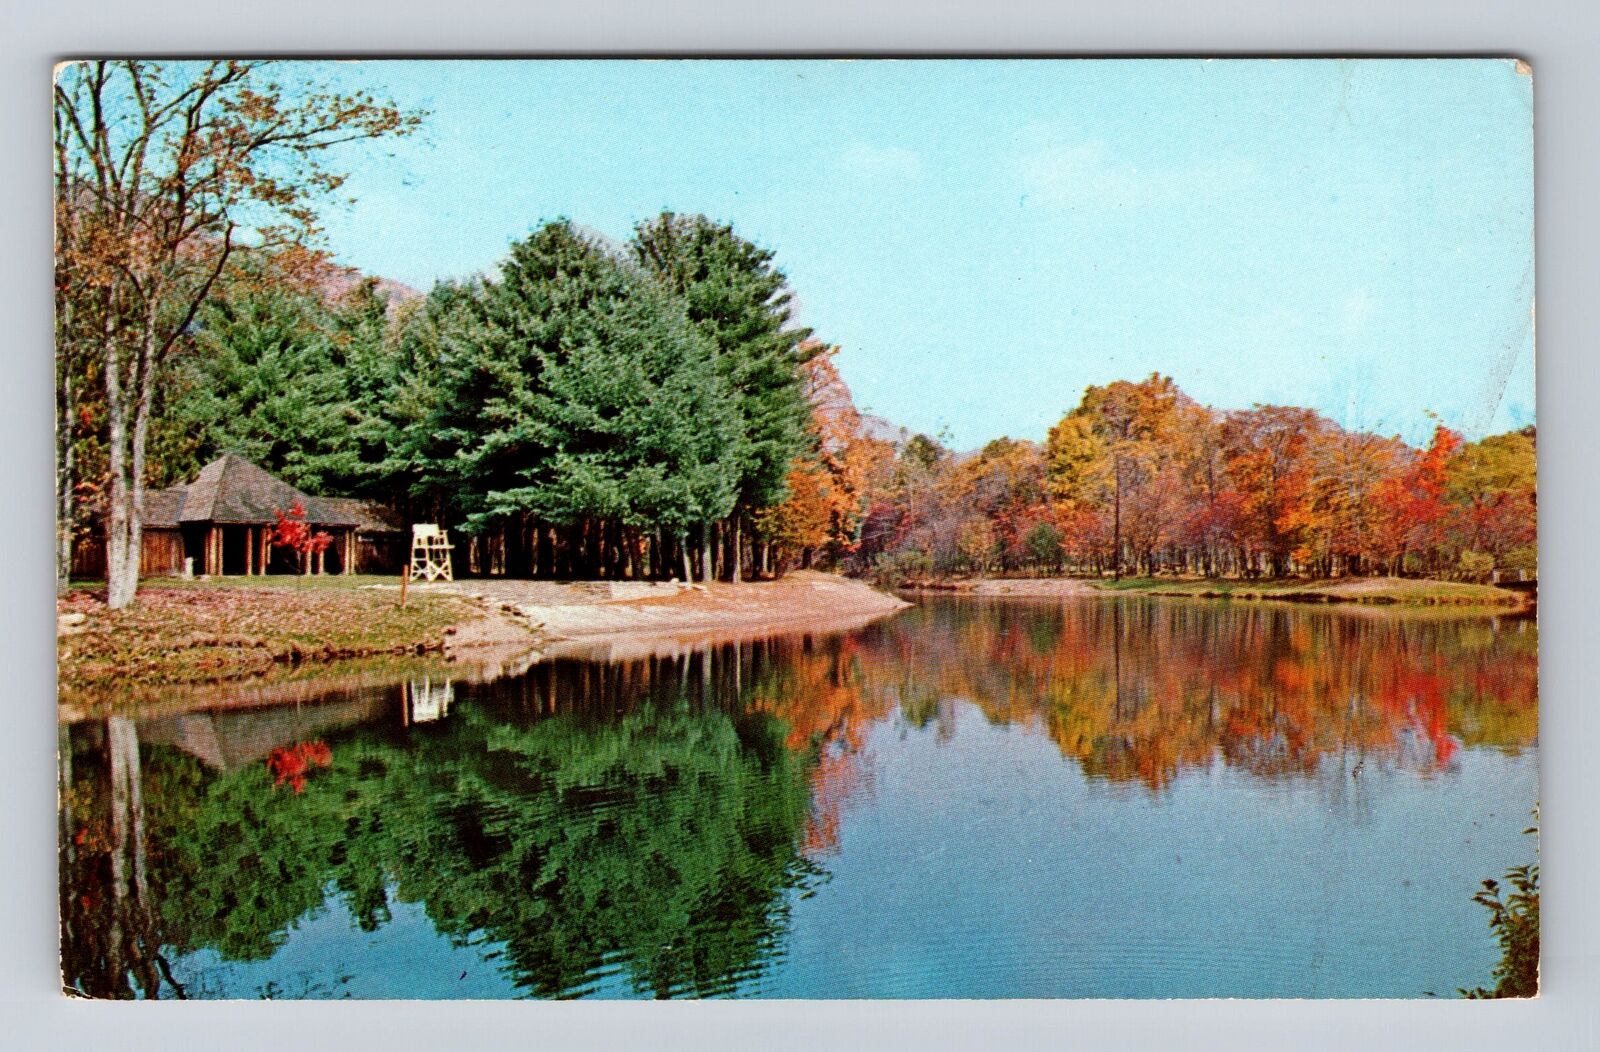 Oleona PA-Pennsylvania, Ole Bull State Park, Kettle Creek, Vintage Postcard